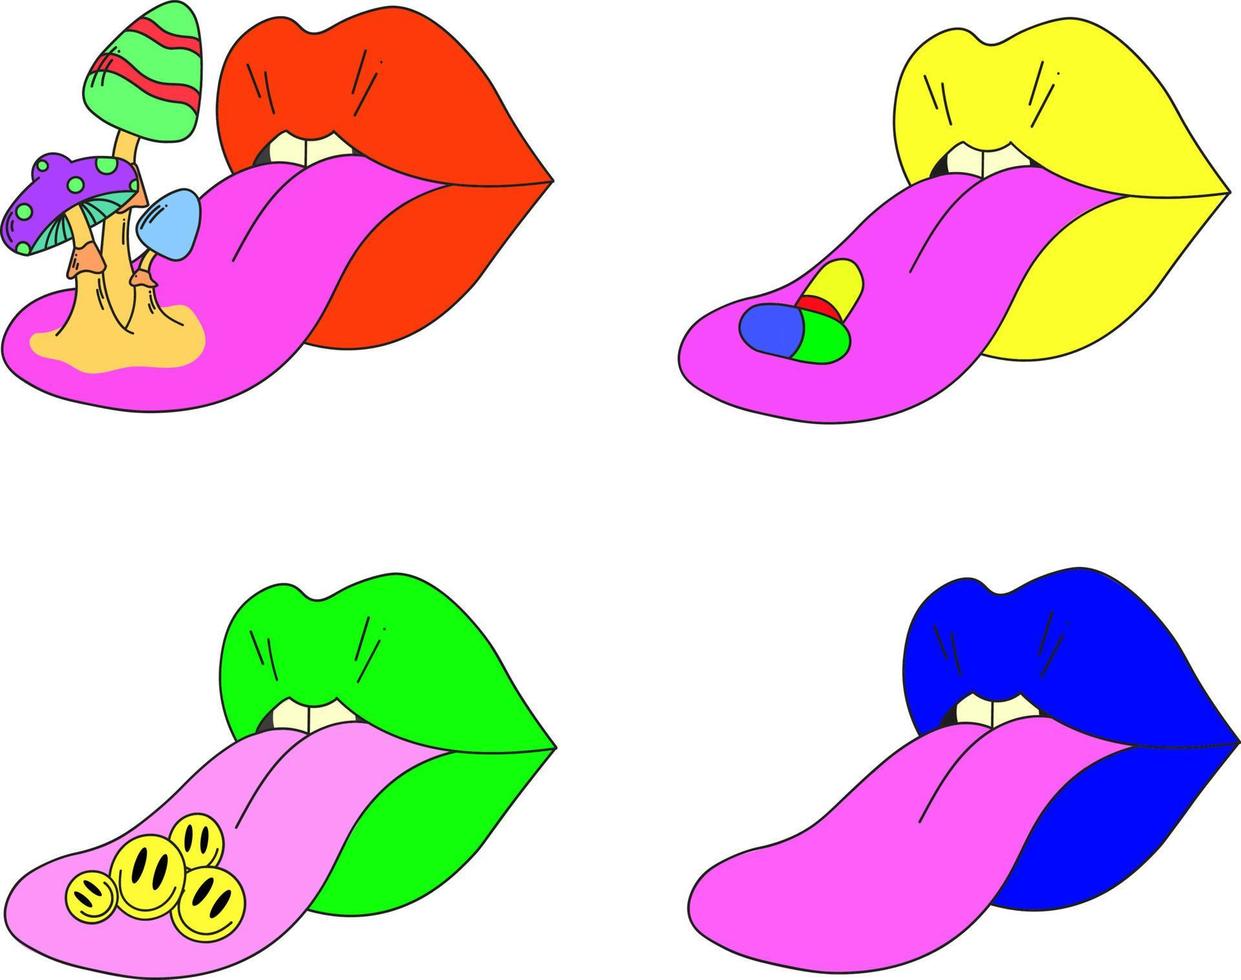 en uppsättning av fyra psykedeliska läppar. läppar med utstående tunga, svamp, uttryckssymboler och piller på tungan. surrealism. vektor